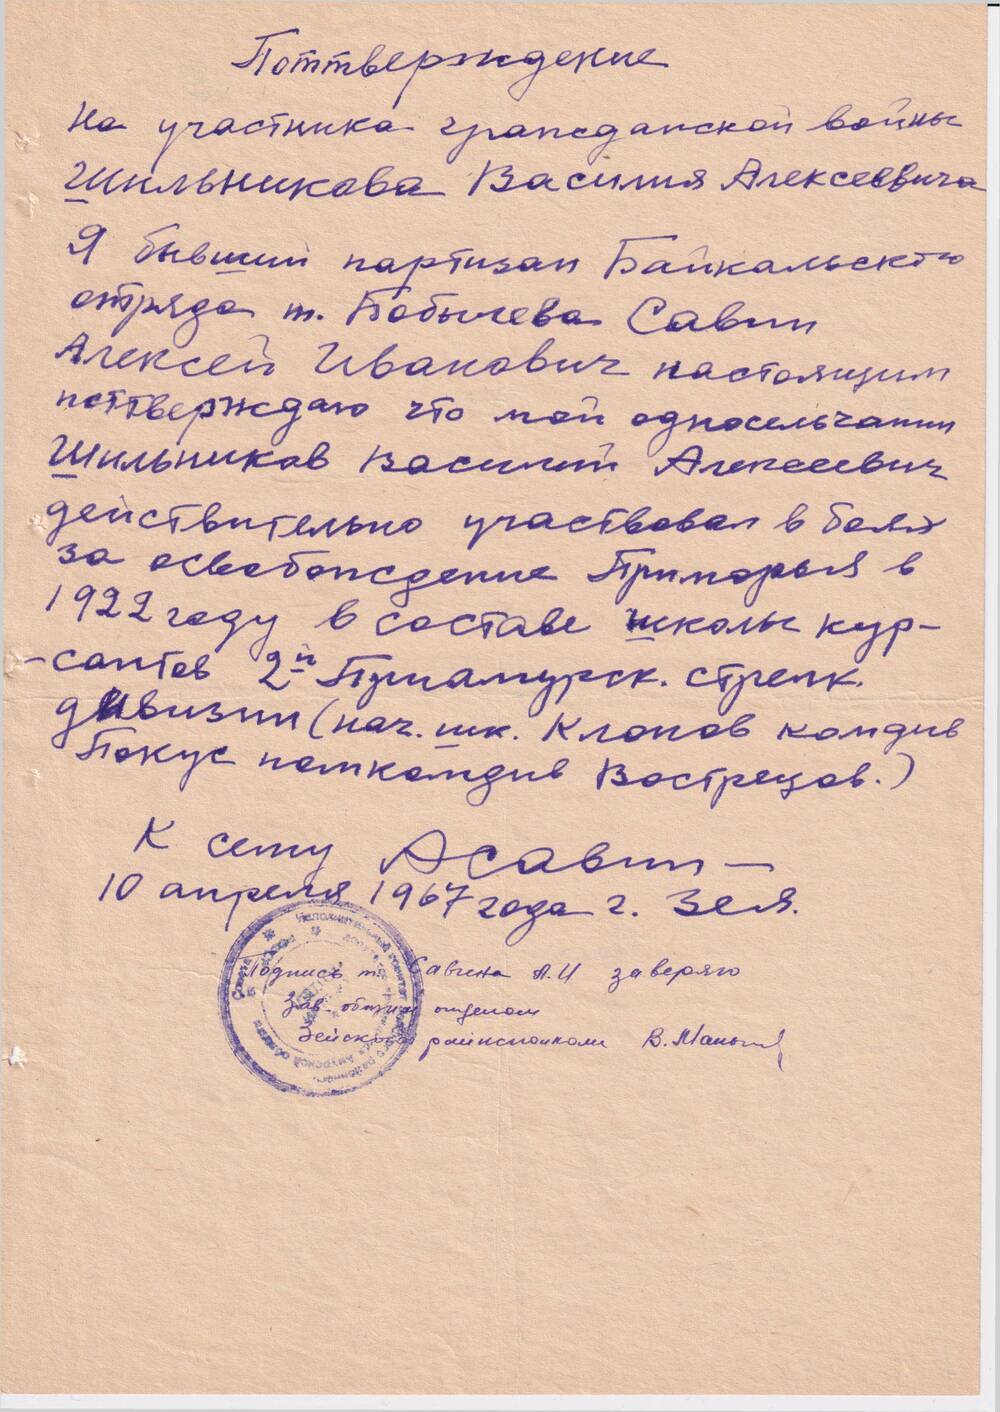 Справка, подтверждающая участие  Шильникова  Василия Алексеевича в революционном движении  на Дальнем Востоке.